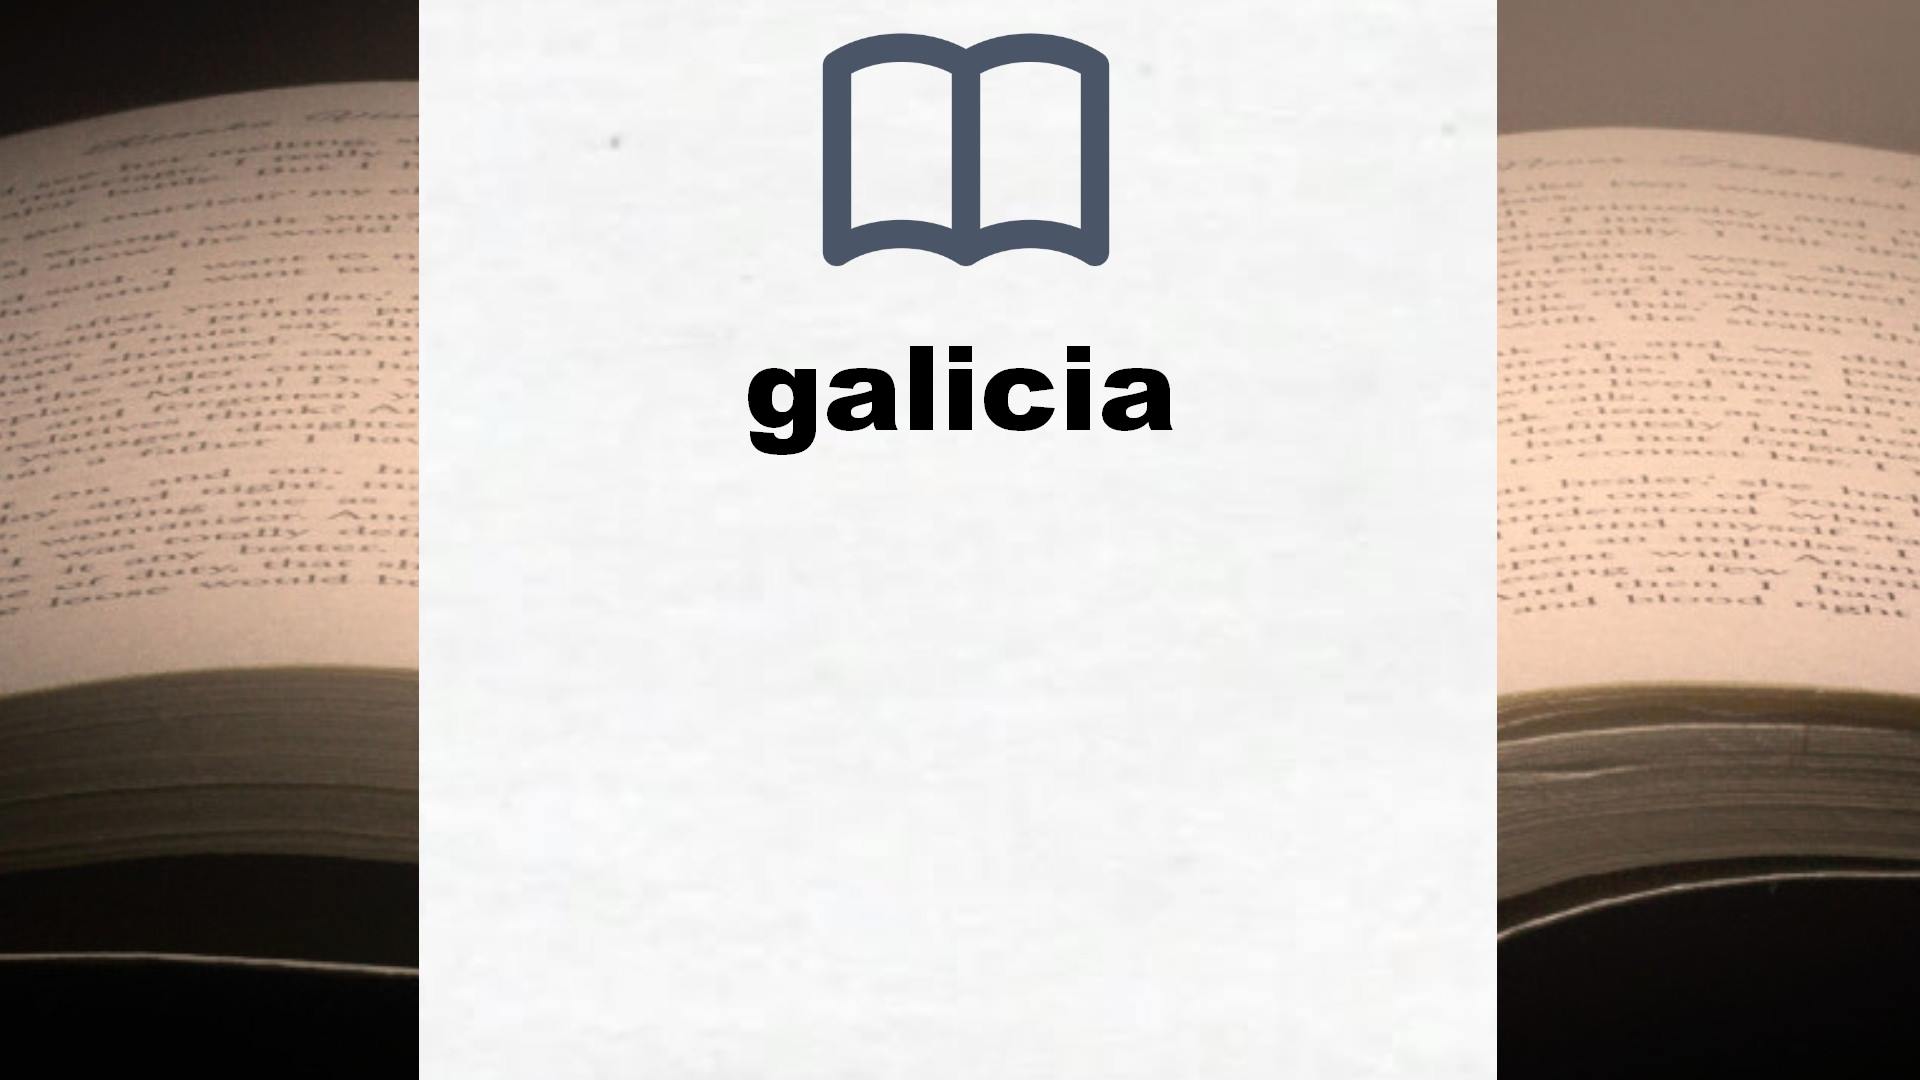 Libros sobre galicia